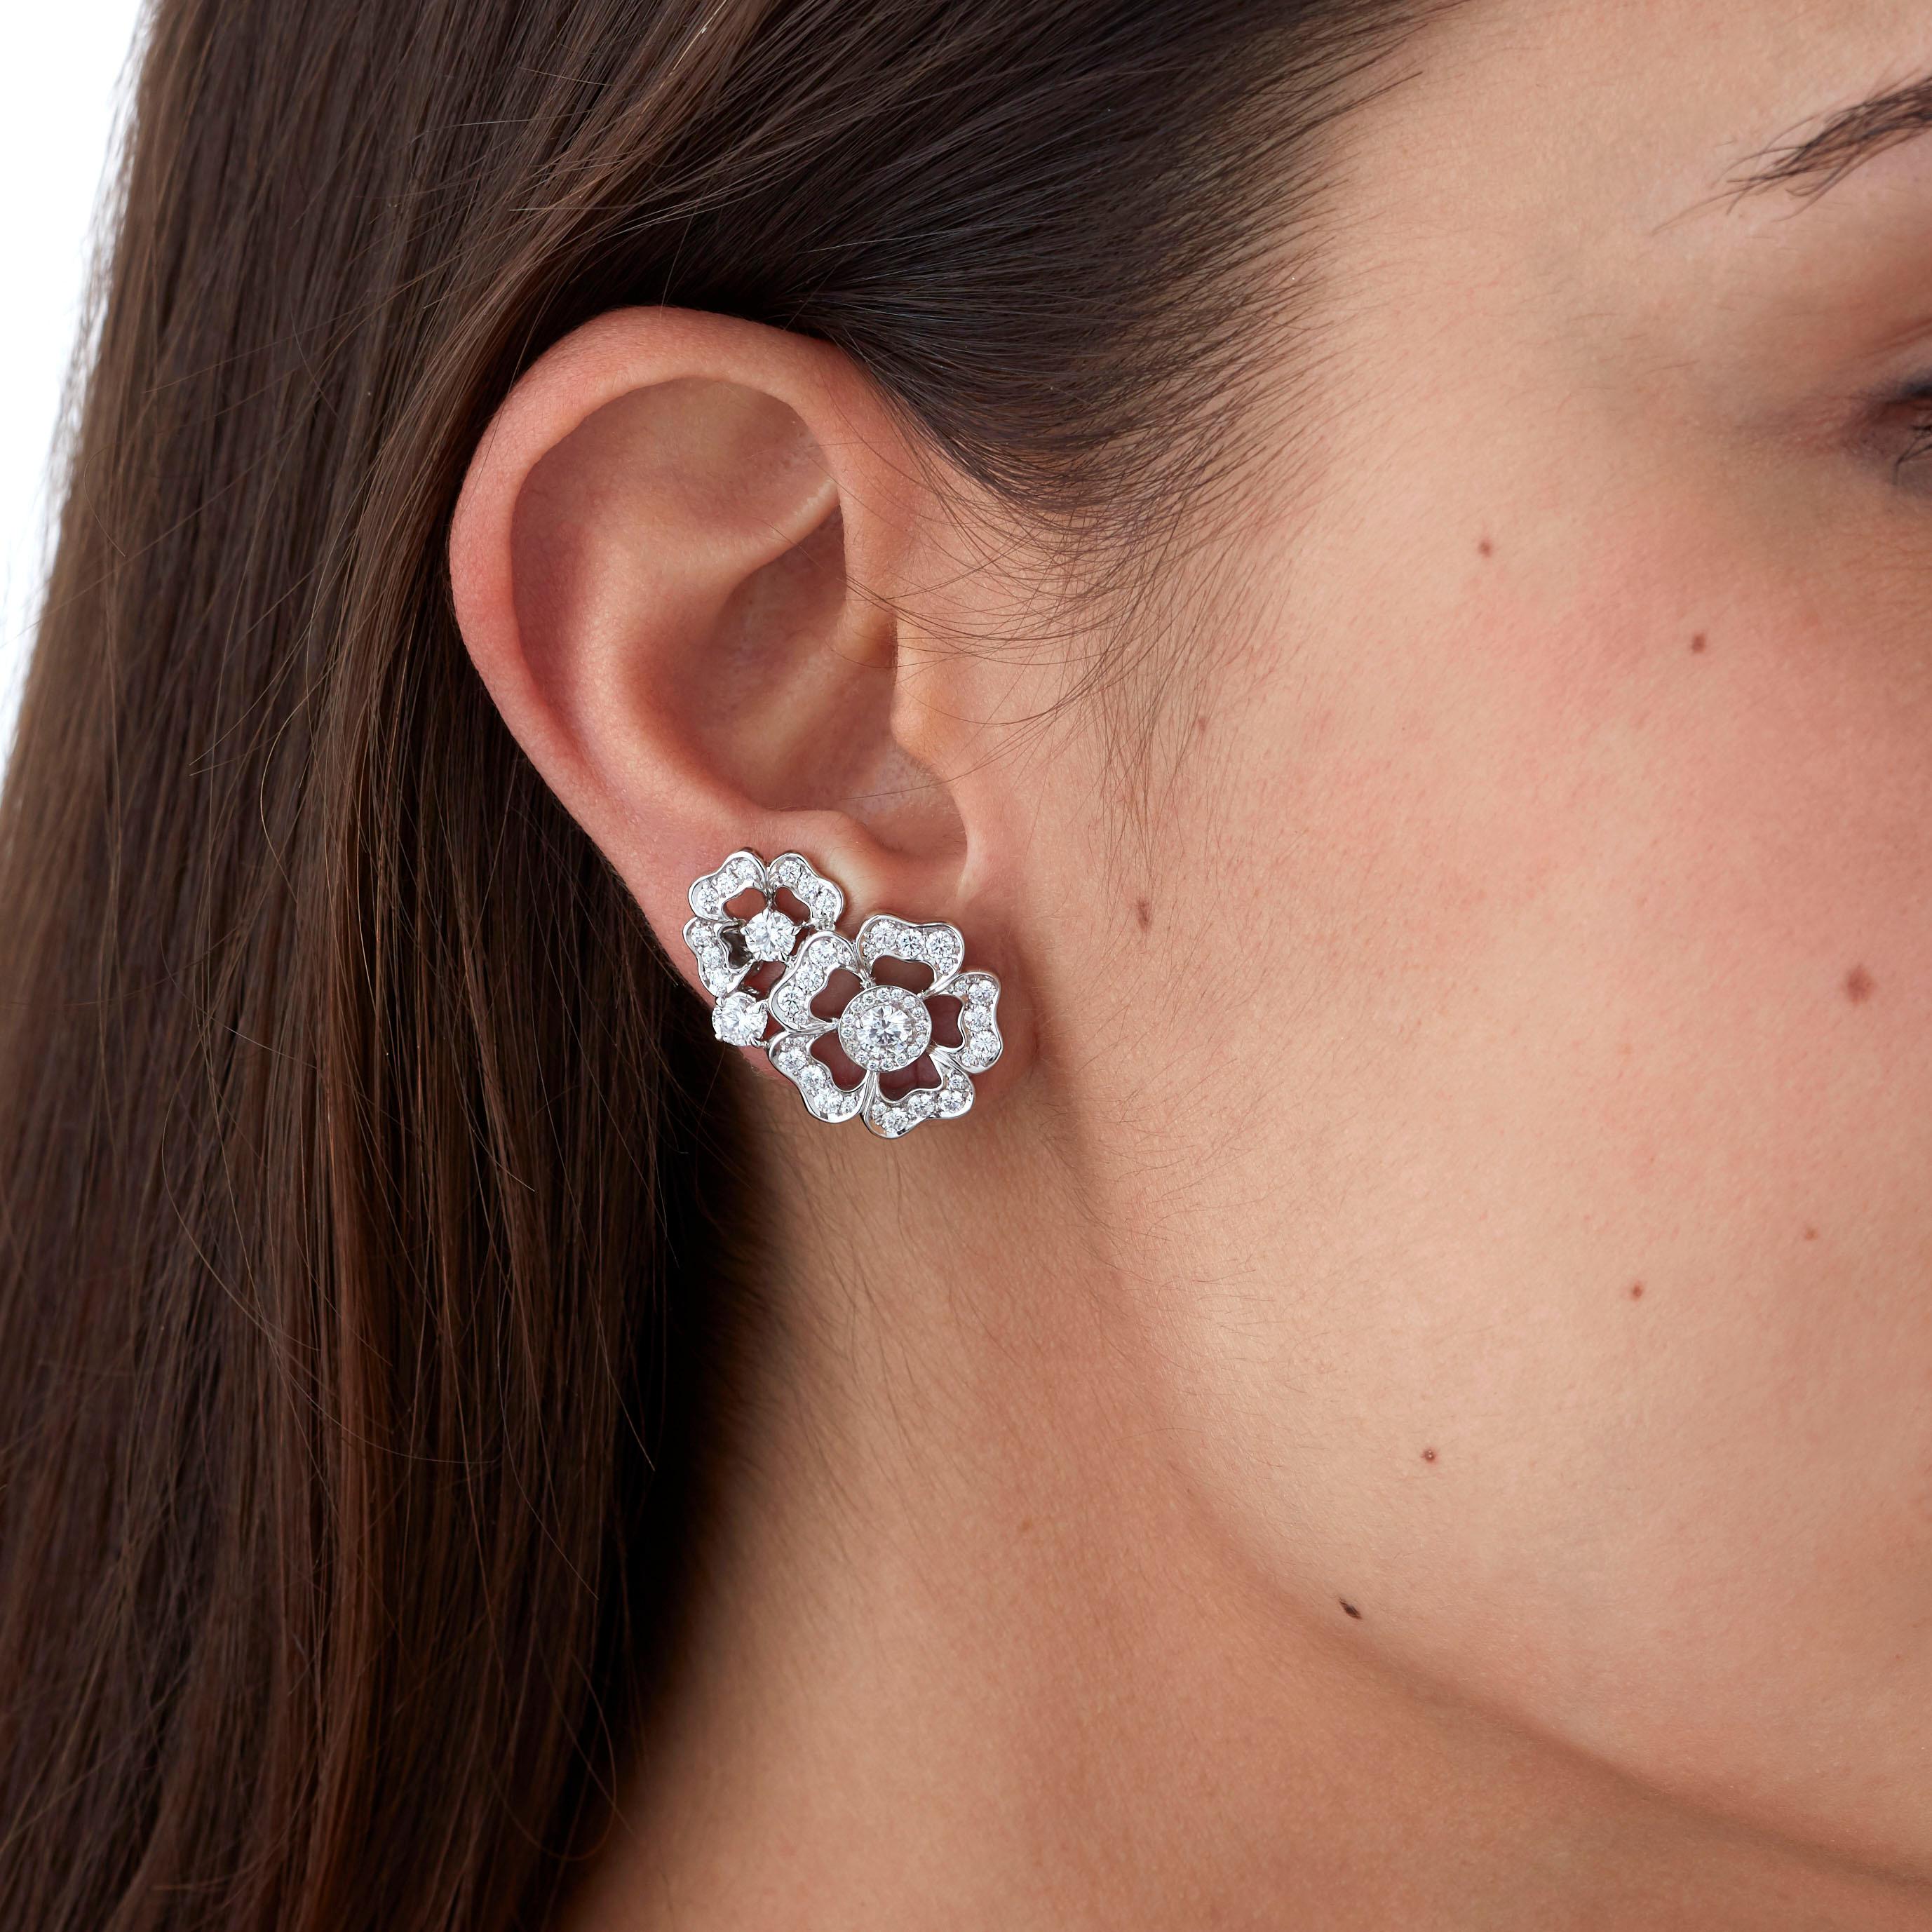 tudor rose earrings